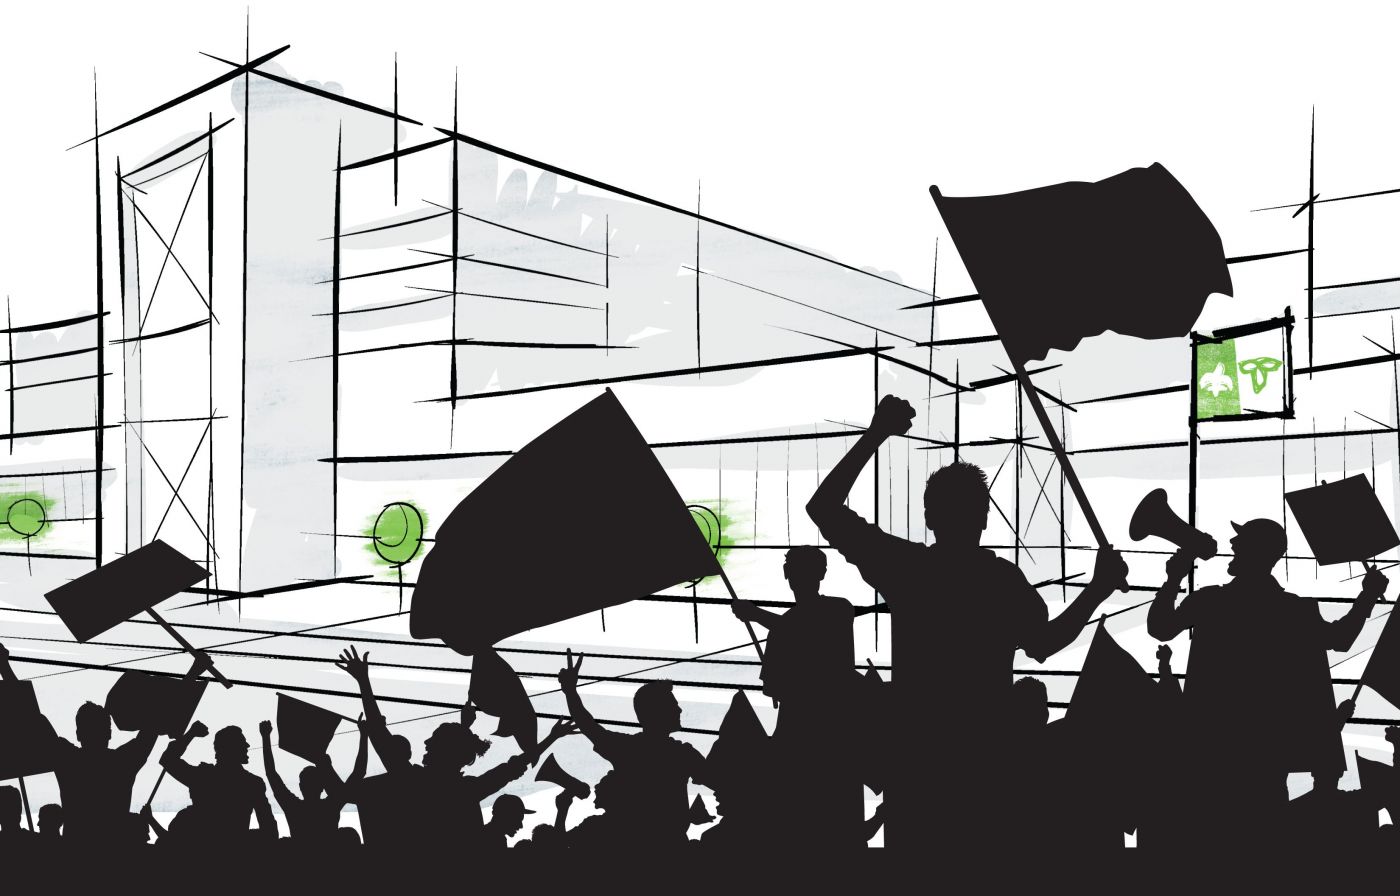 Dessin en couleur d’une foule manifestant avec drapeaux, pancartes et mégaphones. La foule, vue de dos, apparaît en noir, en ombre chinoise. Devant elle, un édifice stylisé devant lequel flottent un drapeau franco-ontarien en couleur ainsi que des ballons verts.